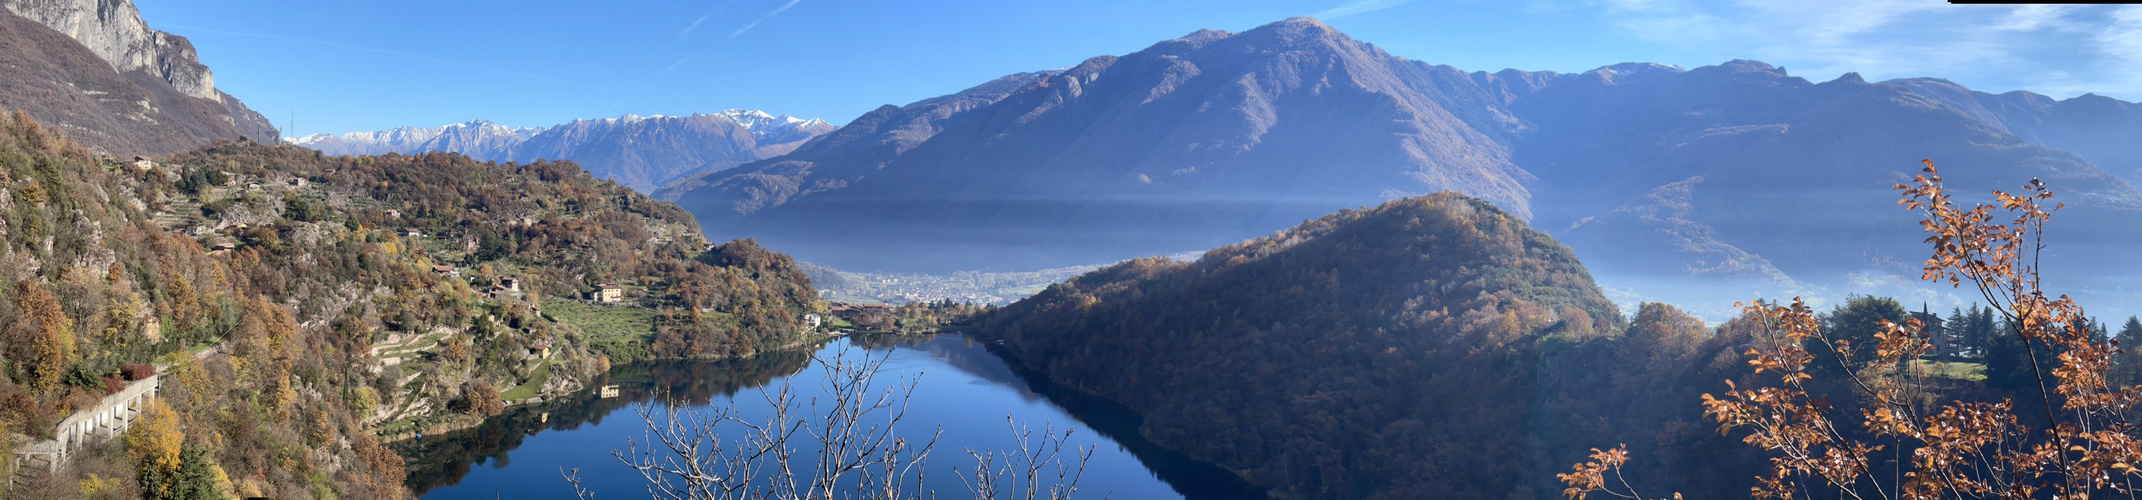 Angolo Terme Provinz Brescia in der Lombardei